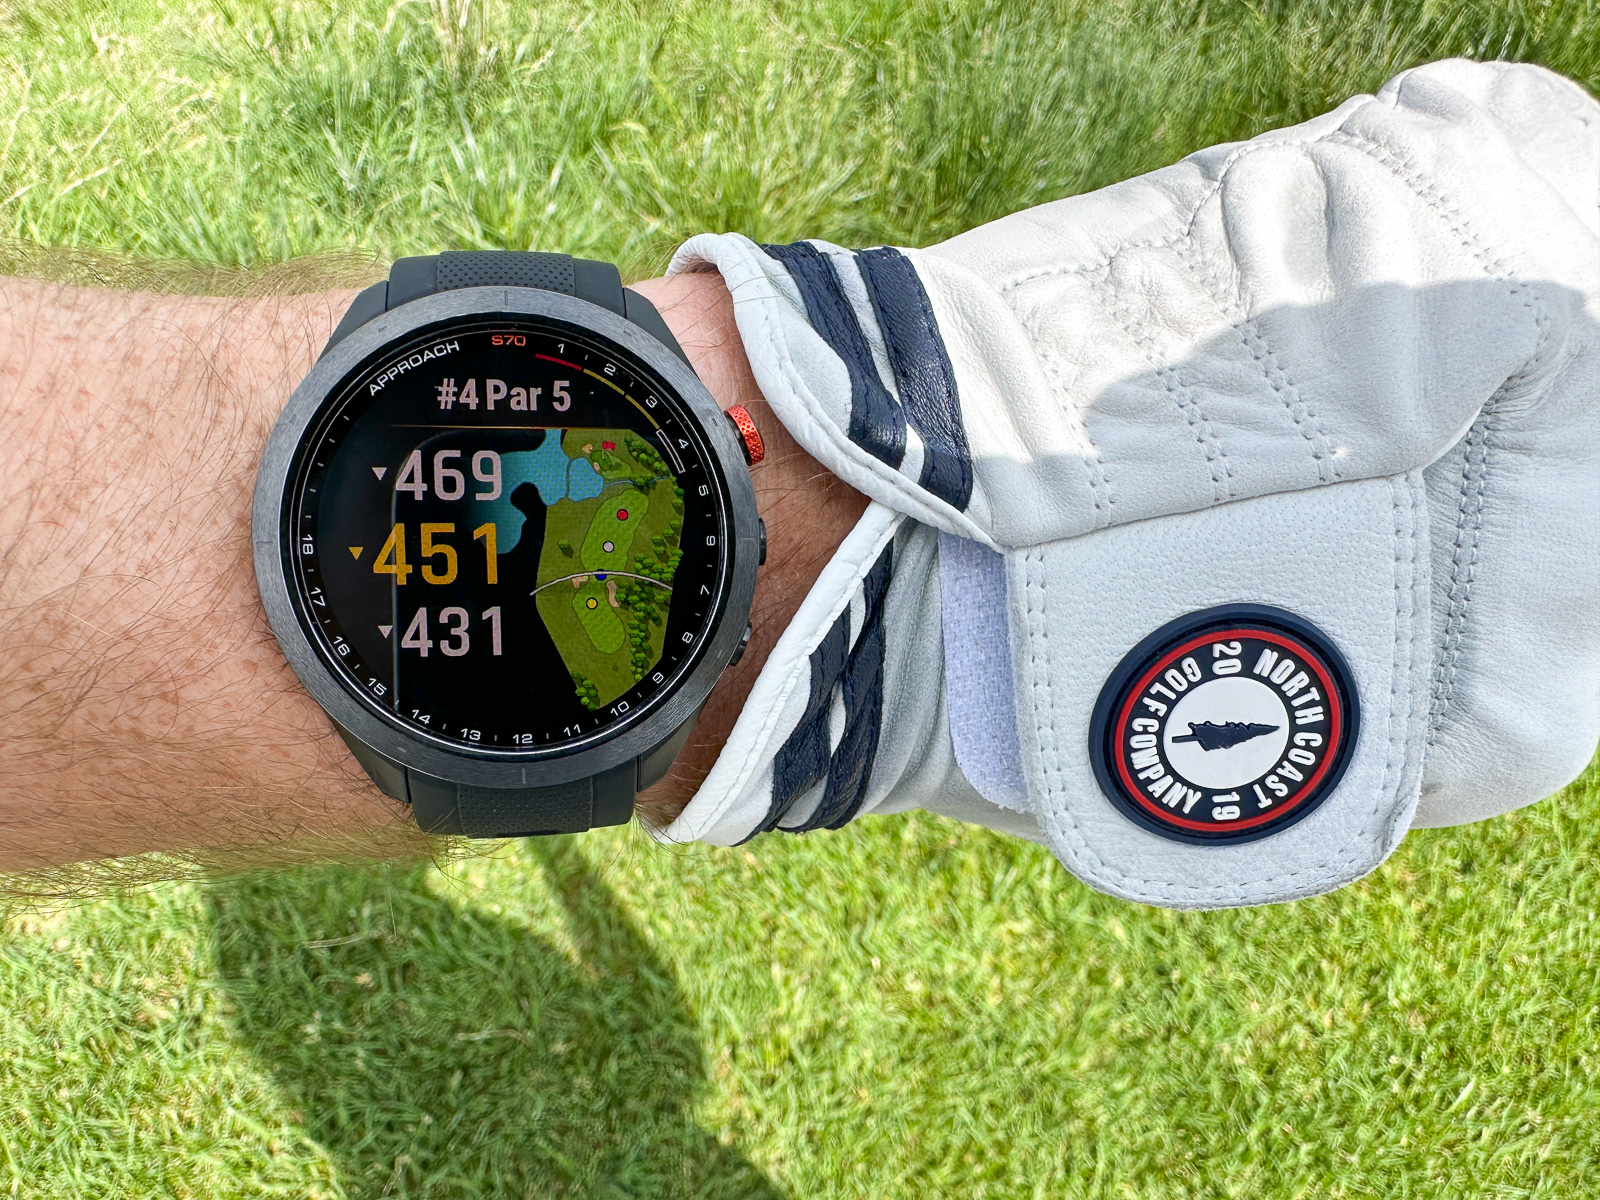 Garmin Approach S70 Golf Watch